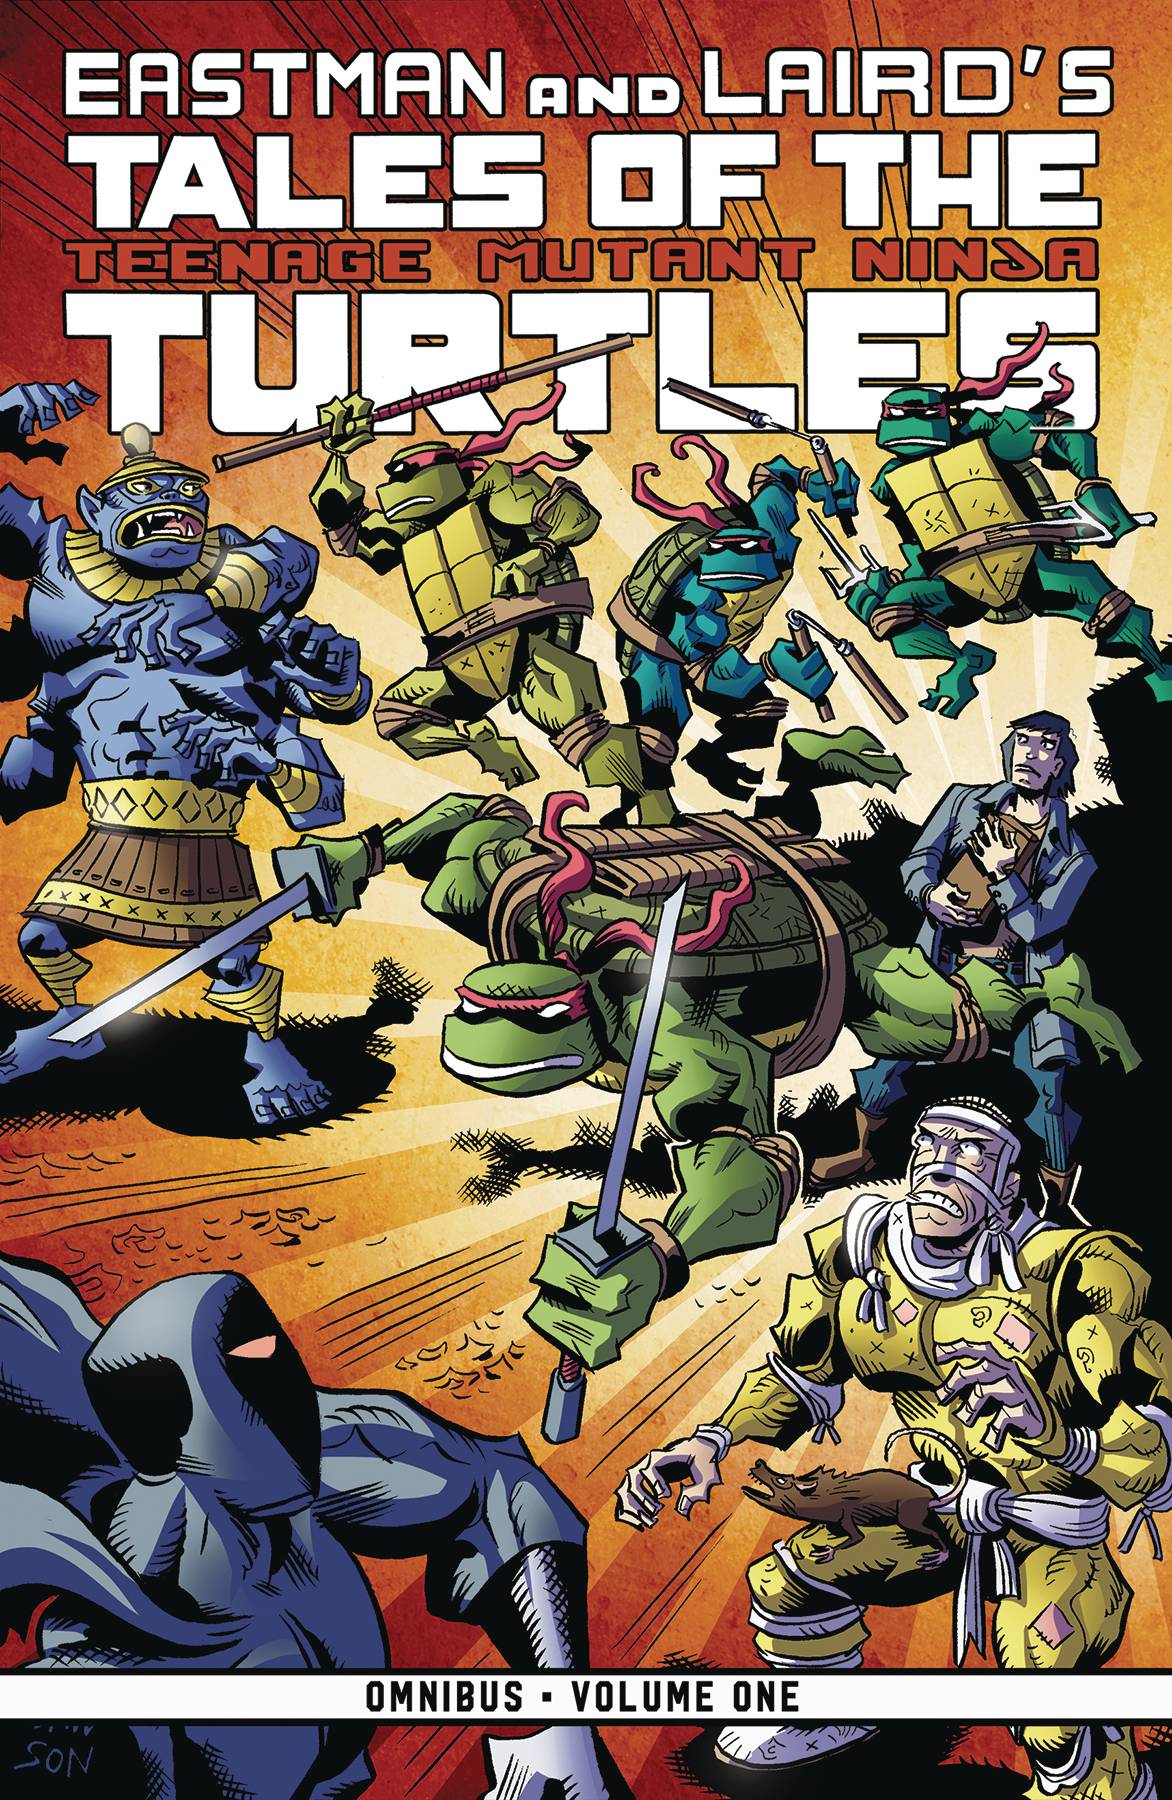 Tales of Teenage Mutant Ninja Turtles Omnibus Graphic Novel Volume 1